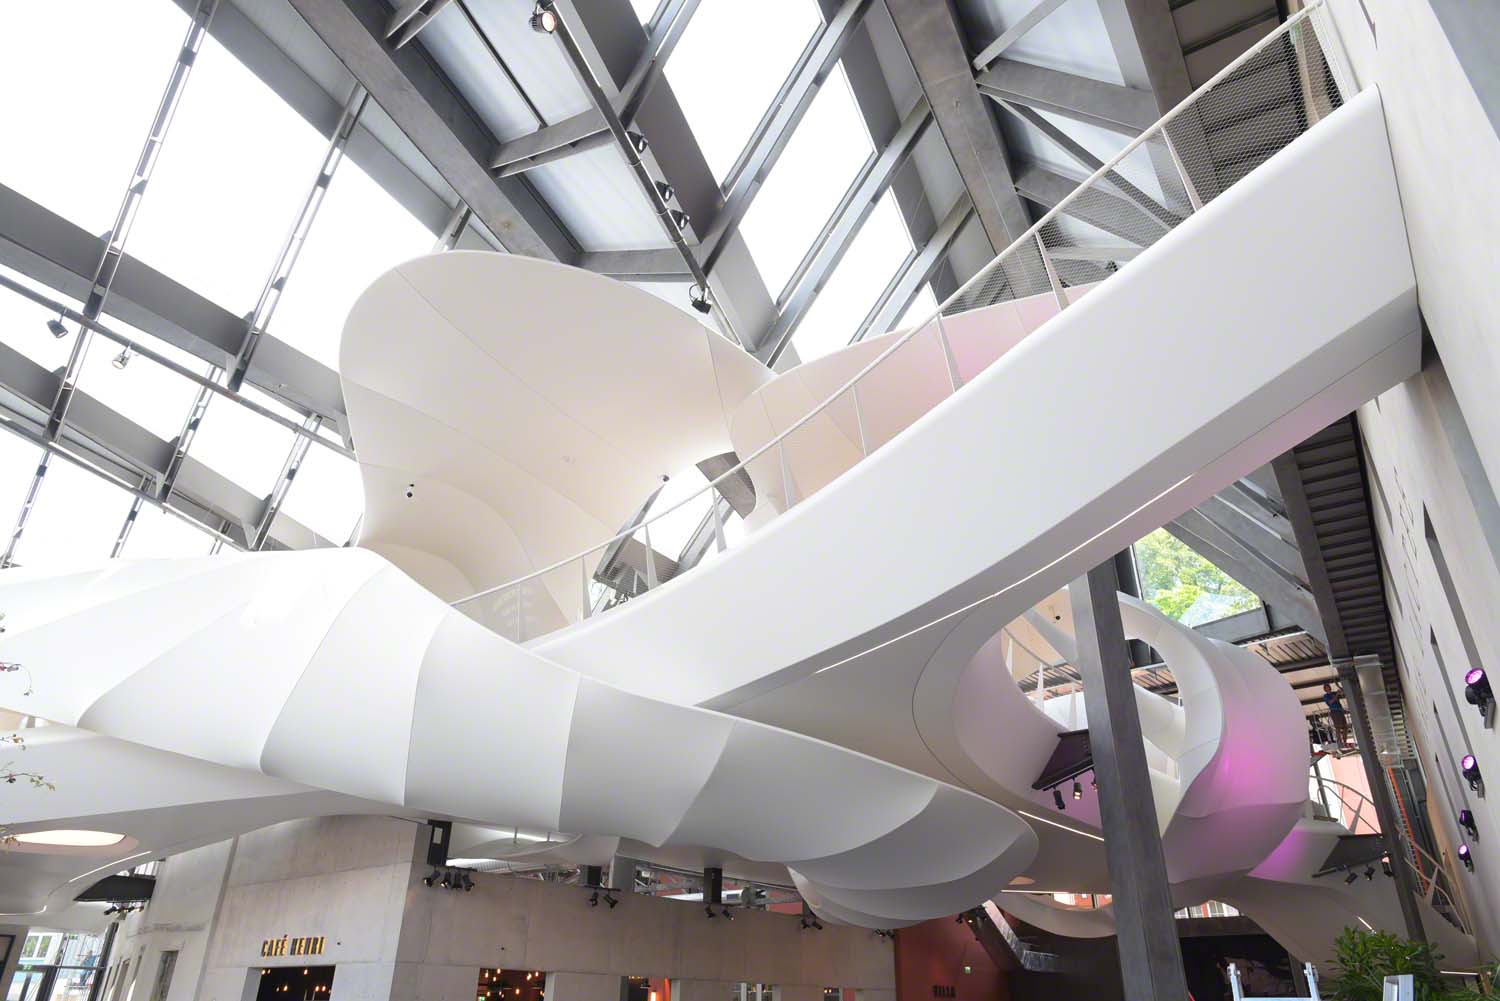 Forme et volume 3D en toile Barrisol pour animer un hall d'aéroport